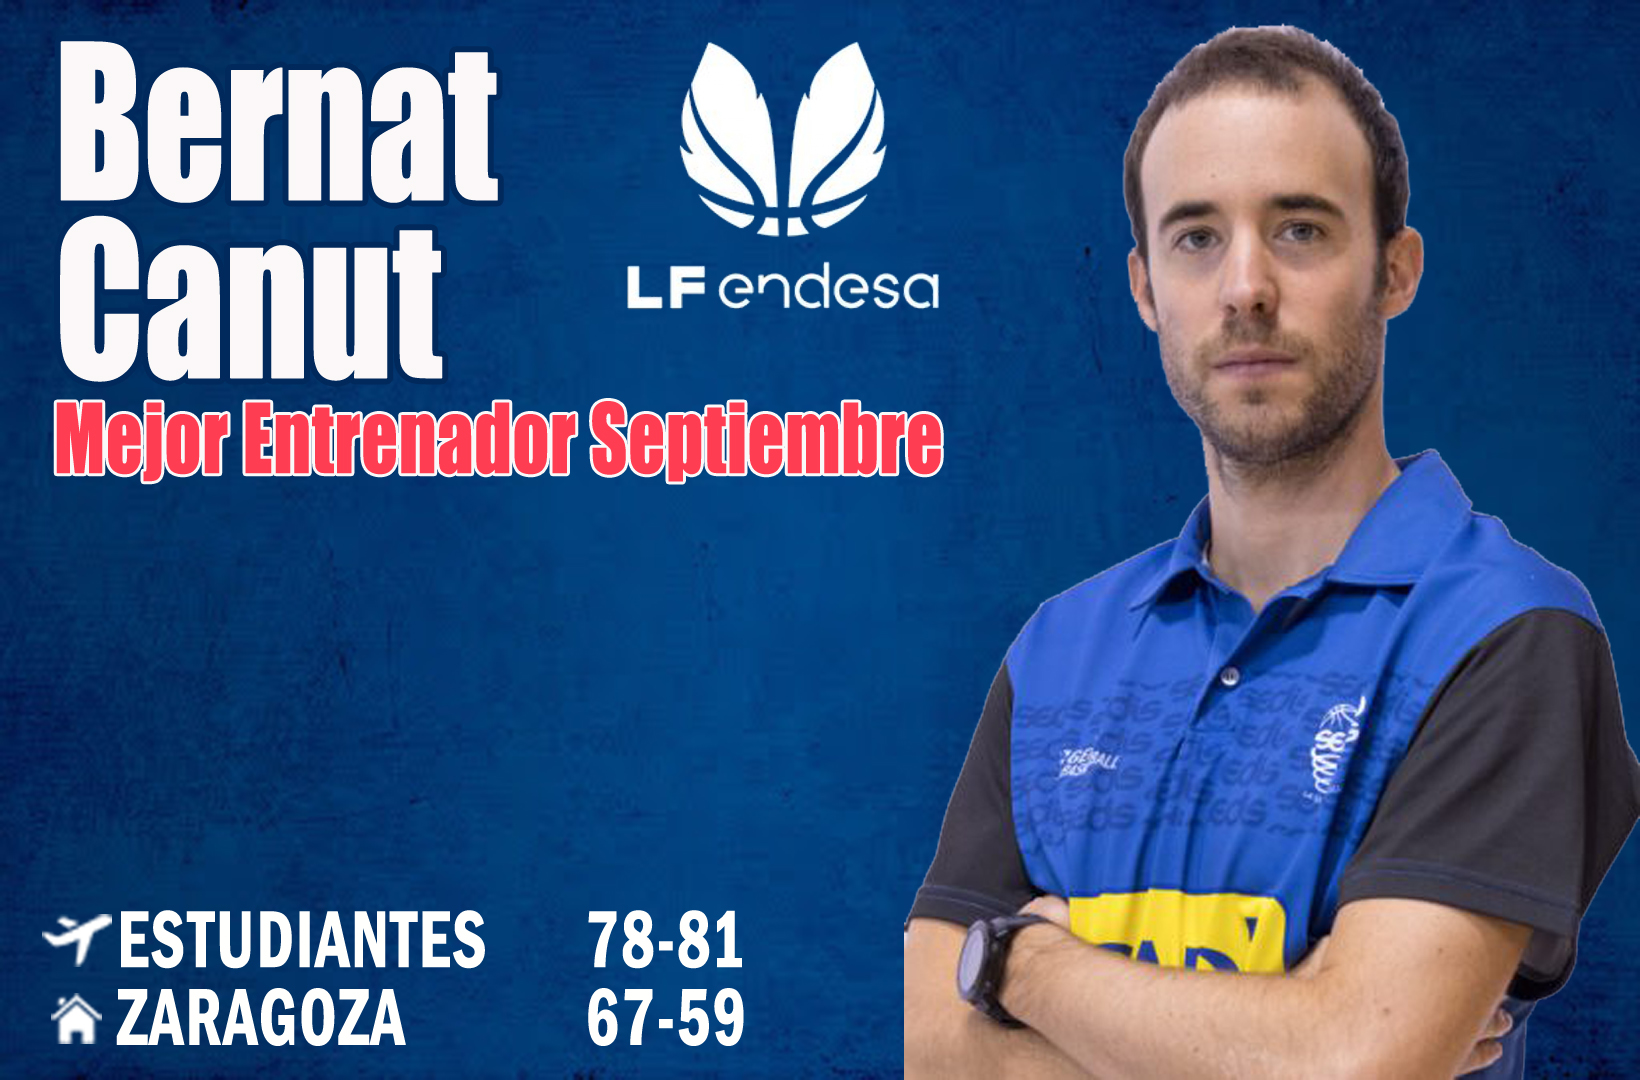 Bernat Canut Mejor Entrenador de la LF Endesa del Mes de Septiembre-Trofeo AEEB